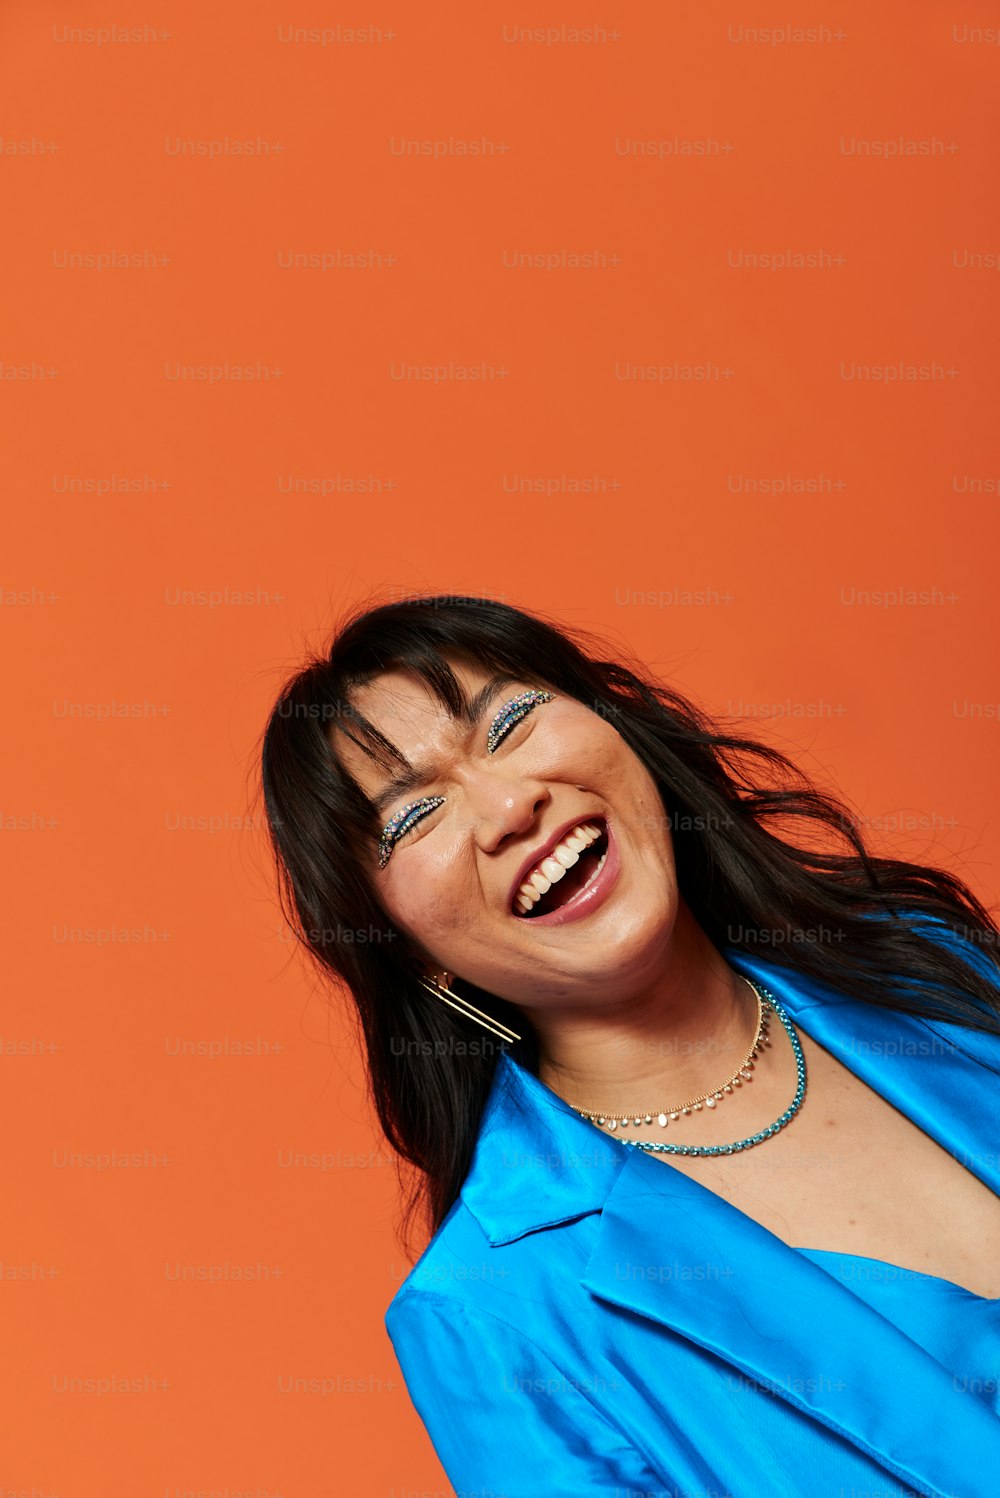 Una mujer con una camisa azul sonriendo y sosteniendo un teléfono celular